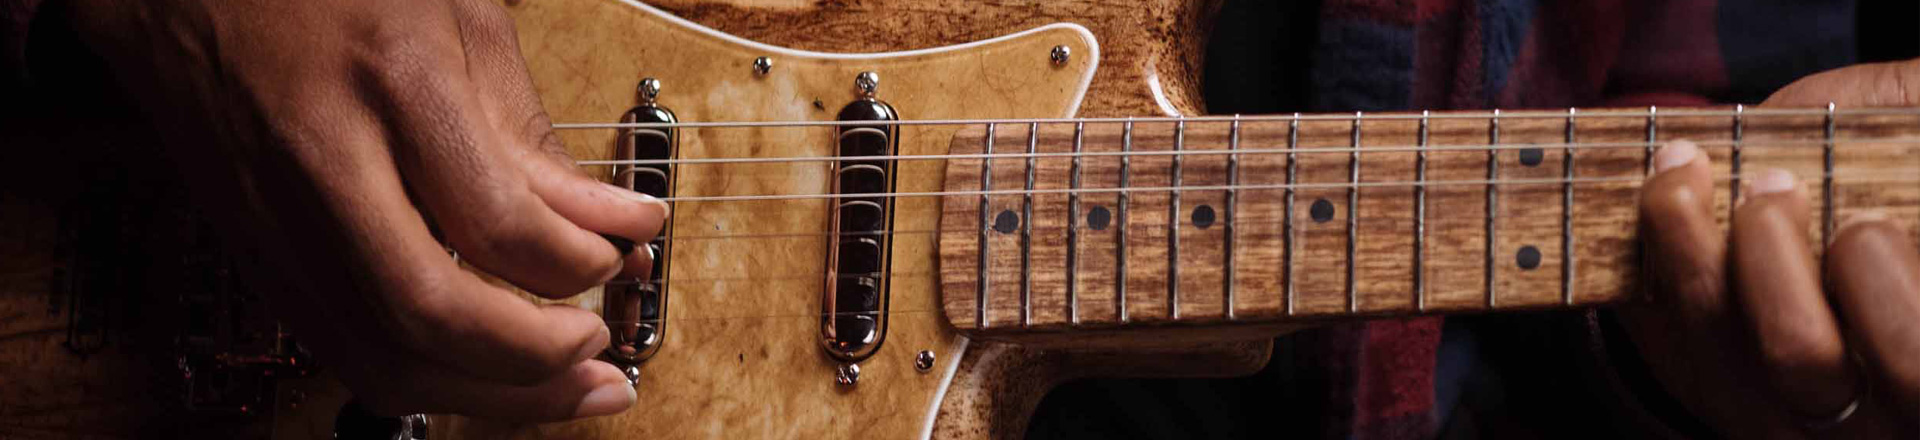 Cuervo x Fender Agave Stratocaster - strat w całości z agawy! [VIDEO]